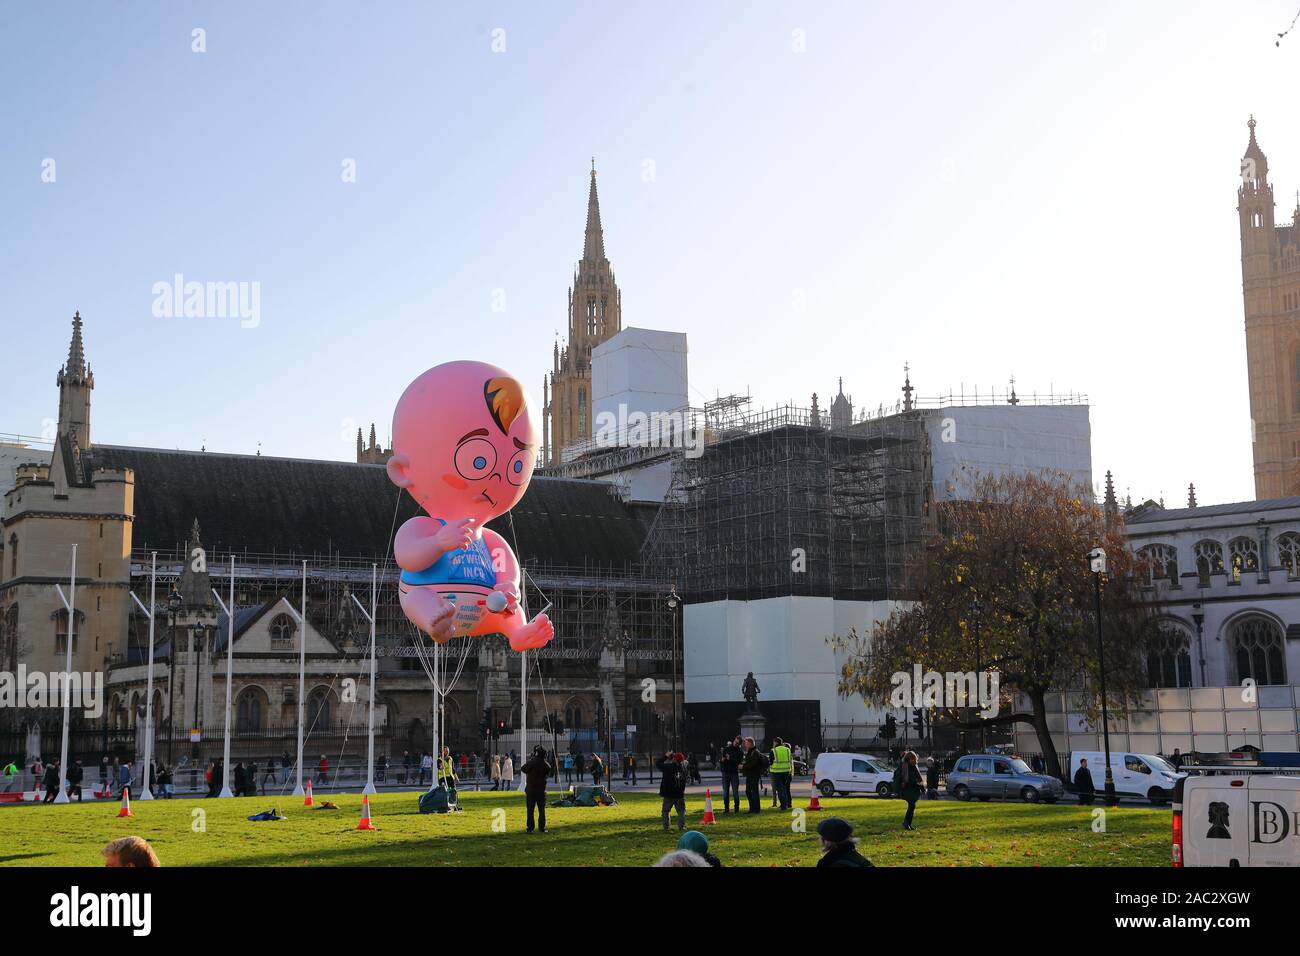 Aktivisten der Bevölkerung Fragen startete ein Baby blimp in Parliament Square für Familienplanung, London, UK Stockfoto